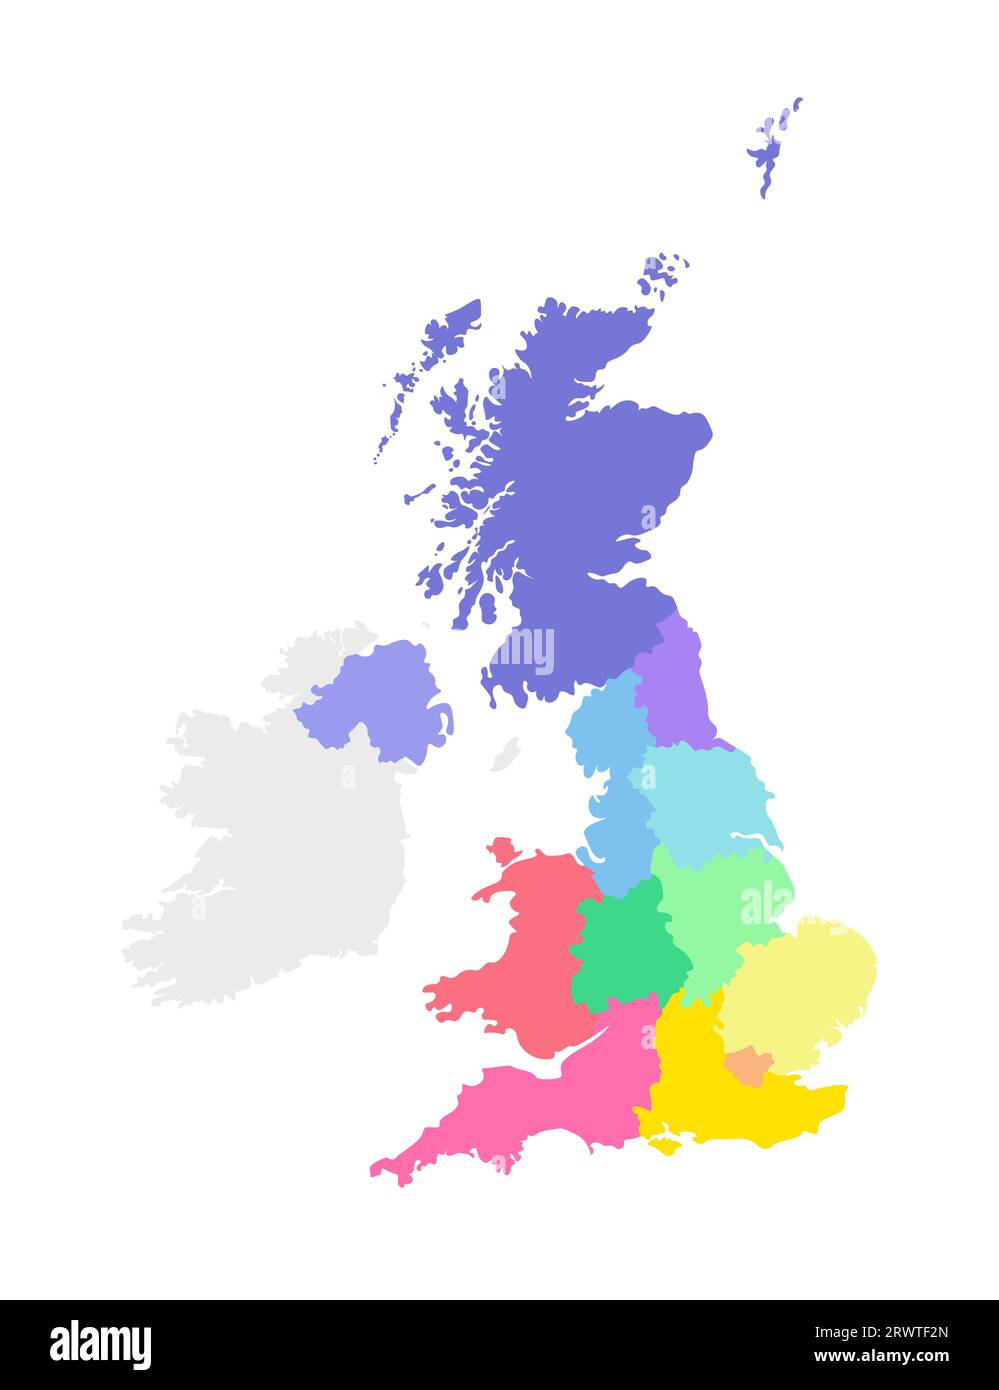 Vektor-isolierte Illustration einer vereinfachten Verwaltungskarte des Vereinigten Königreichs Großbritannien und Nordirland. Grenzen der Regionen. Mul Stock Vektor